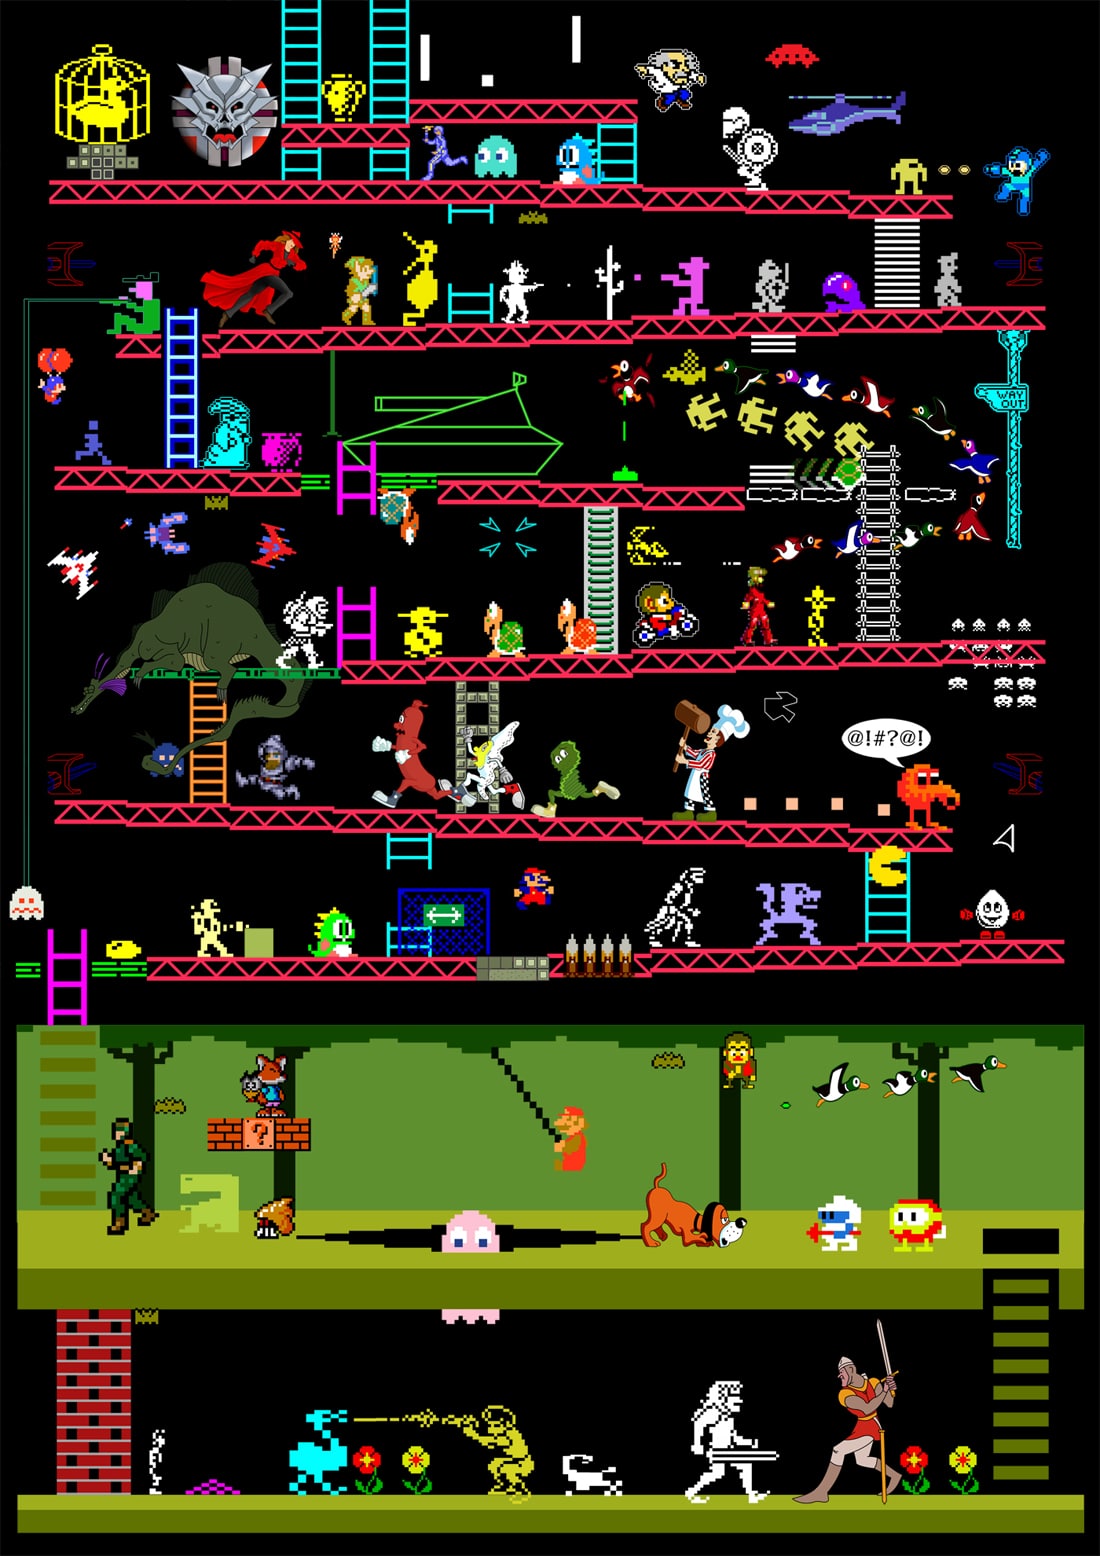 Retro-80s-Arcade-Games-Illustration